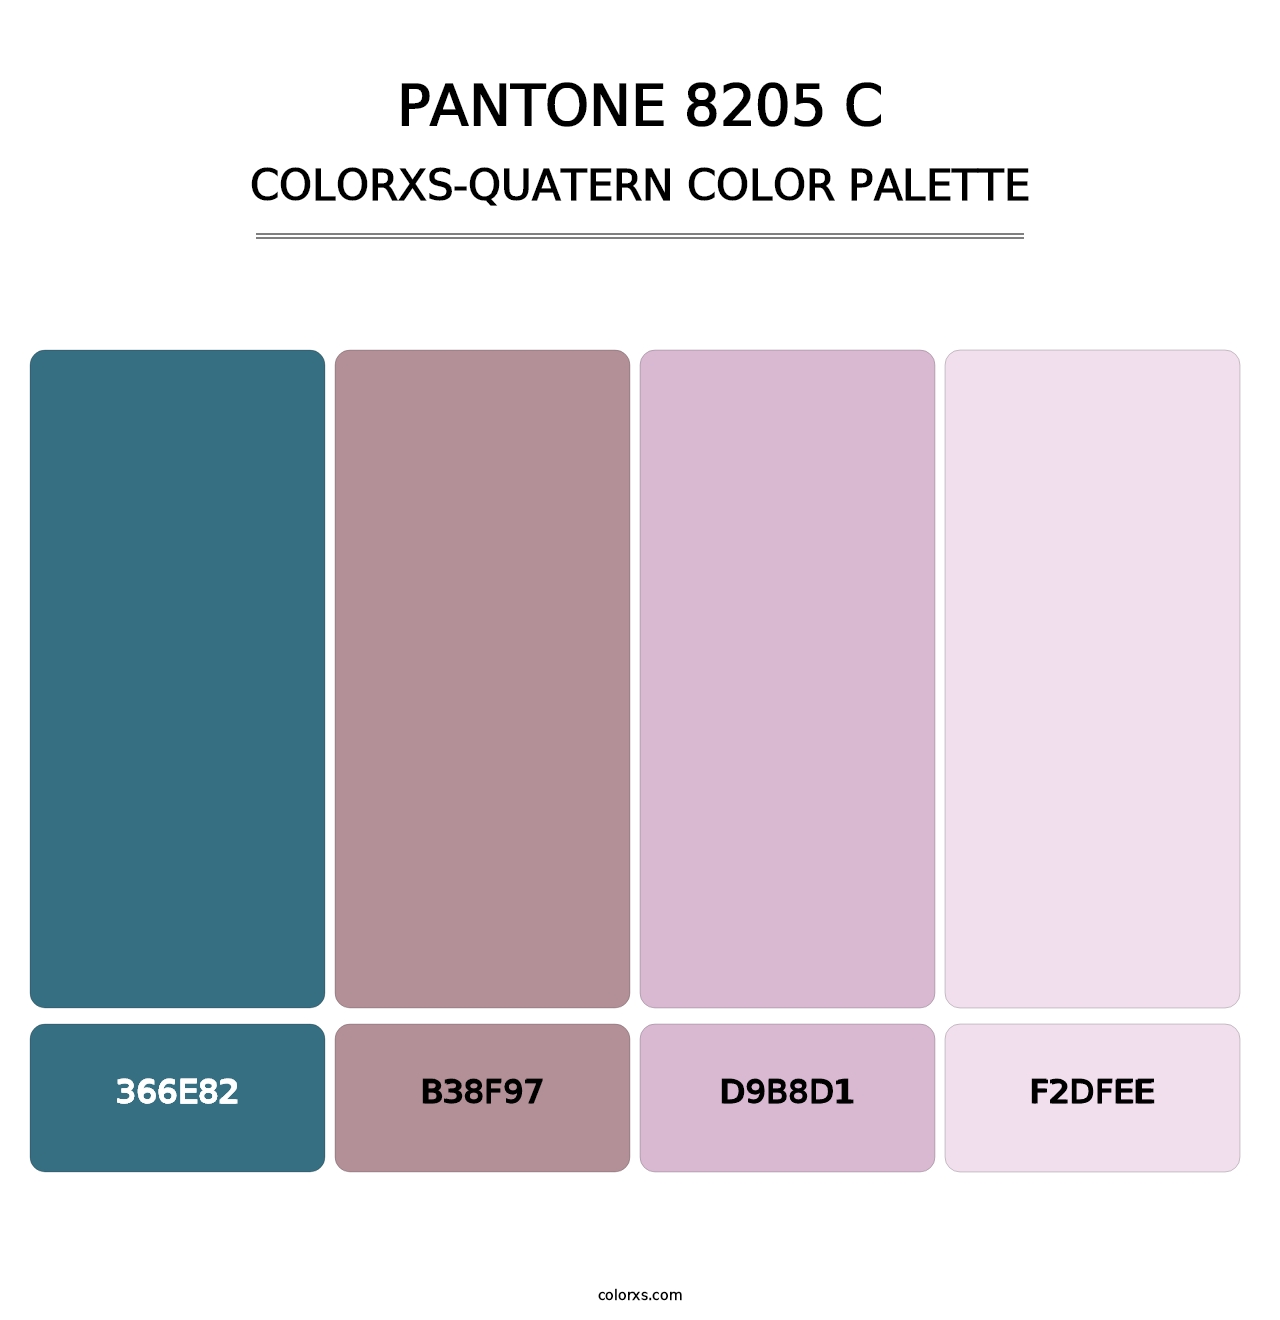 PANTONE 8205 C - Colorxs Quatern Palette